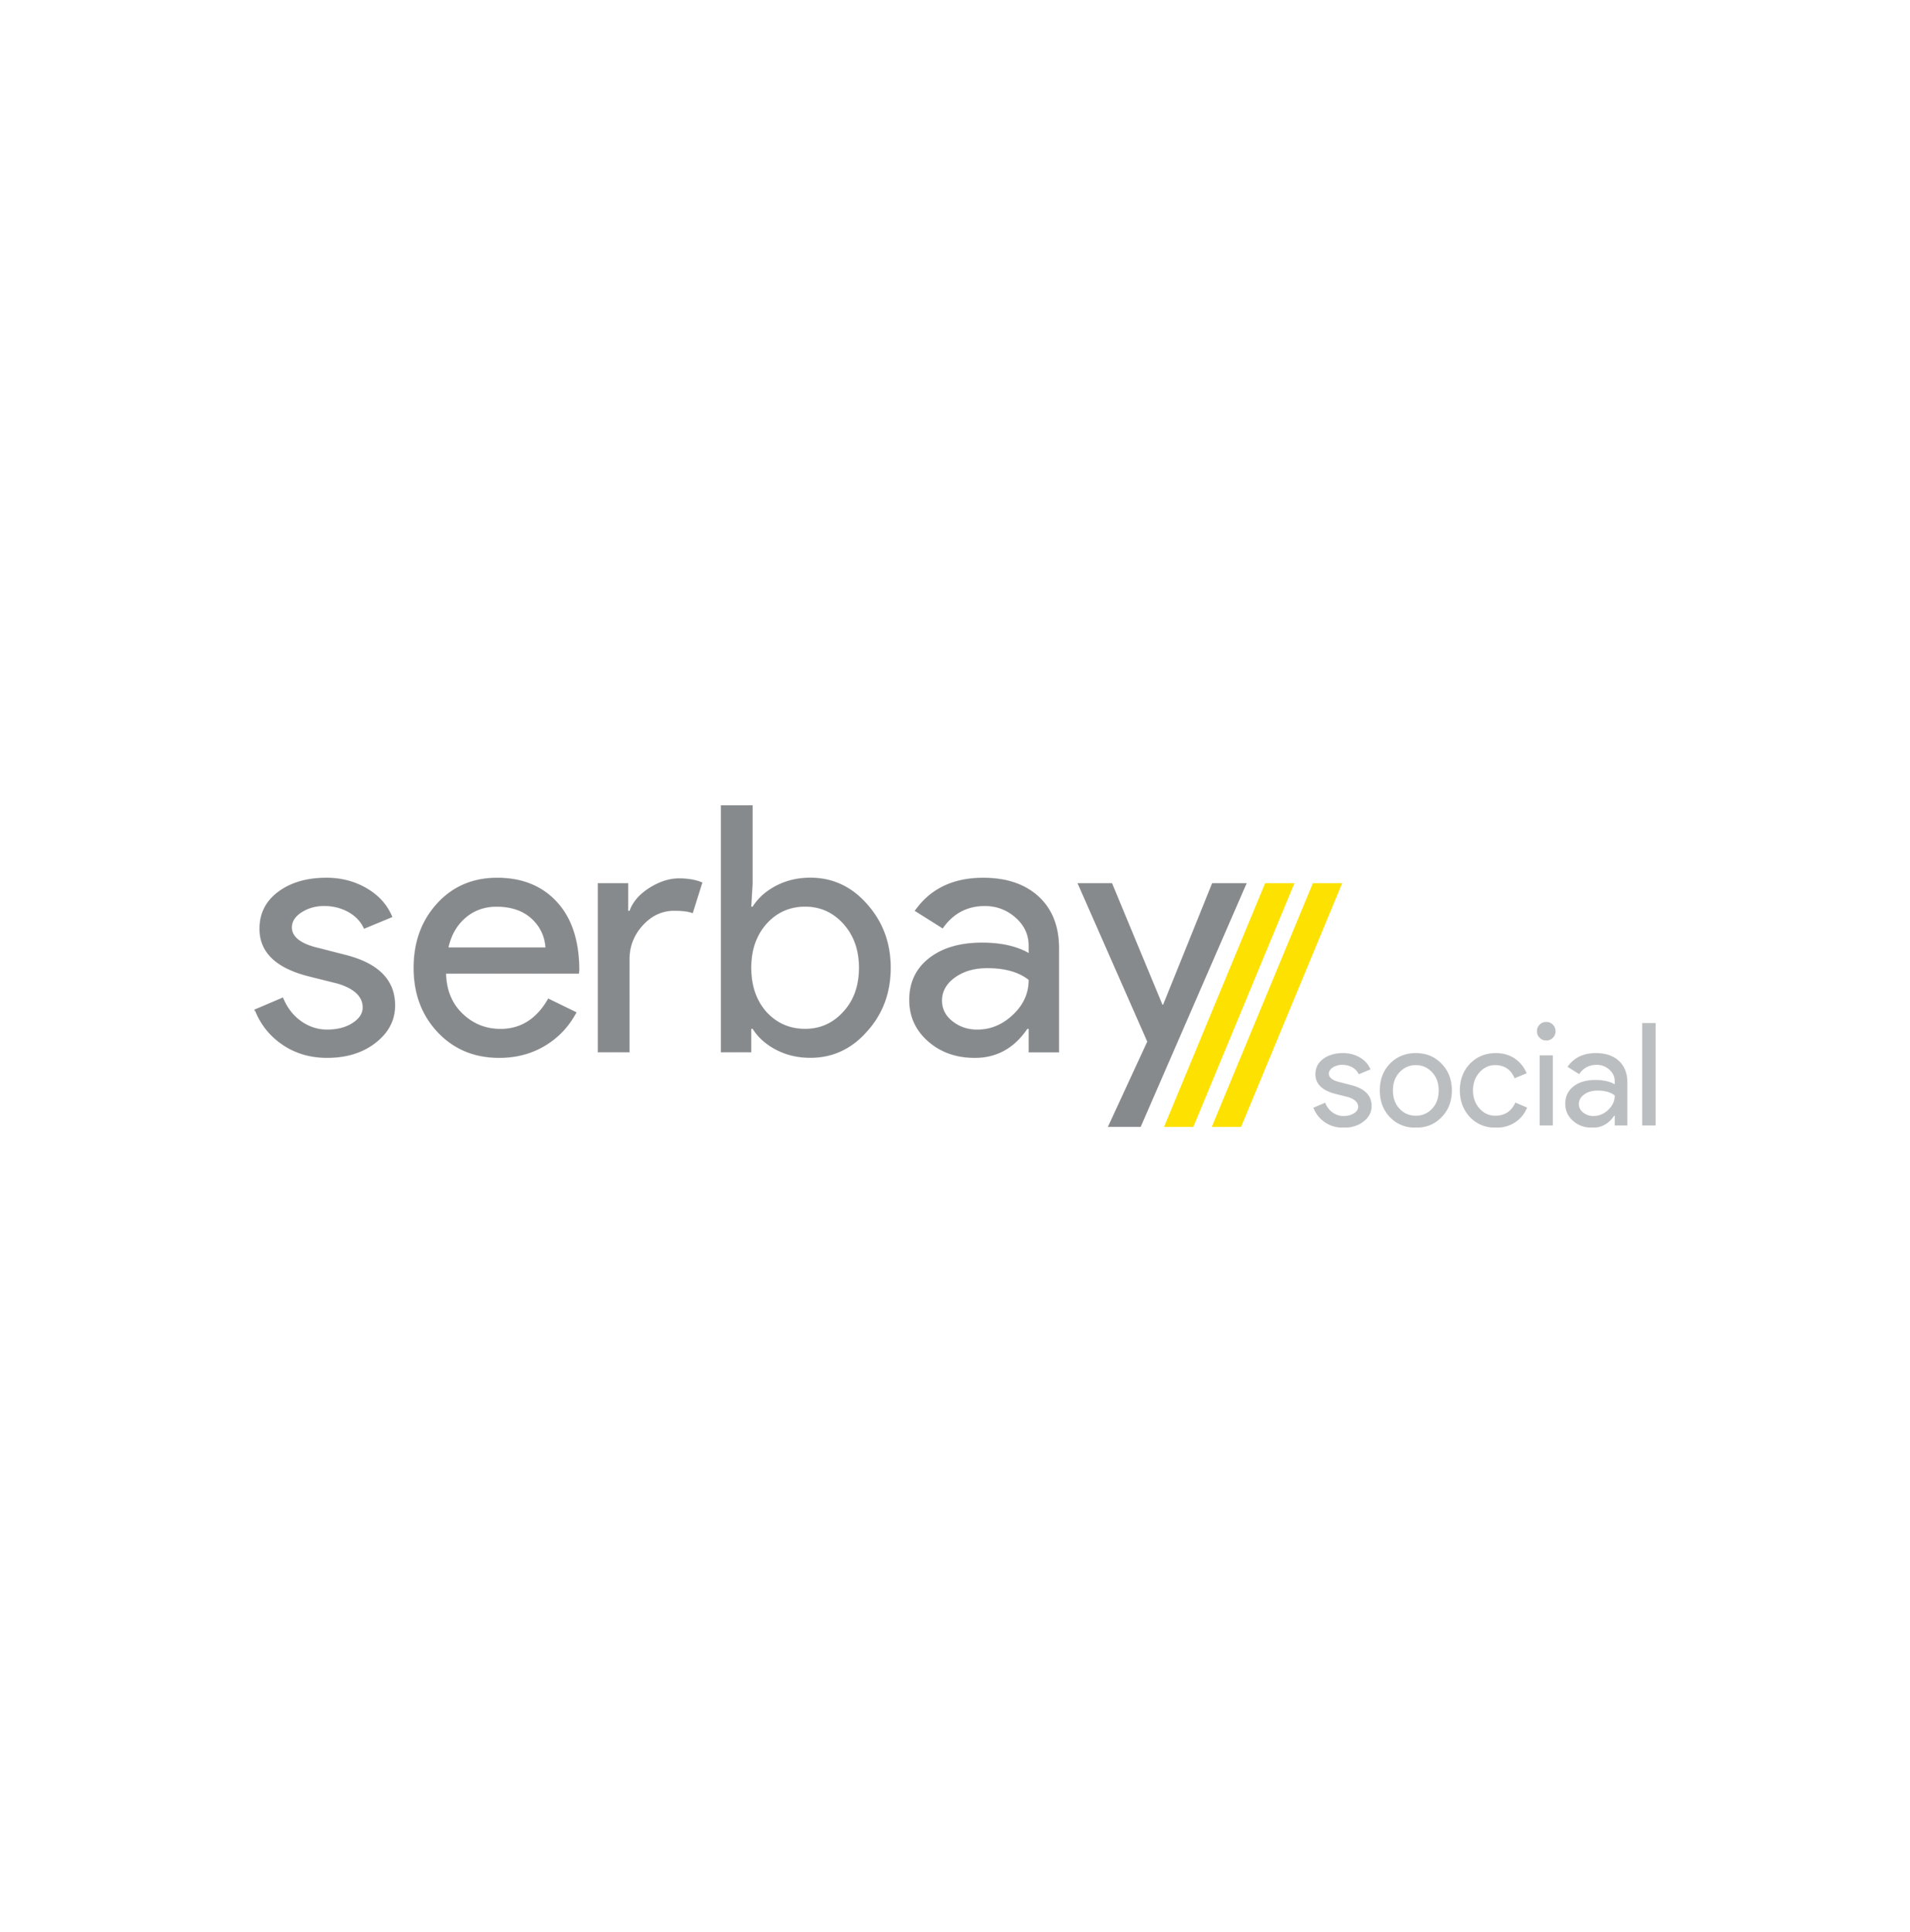 Serbay Social